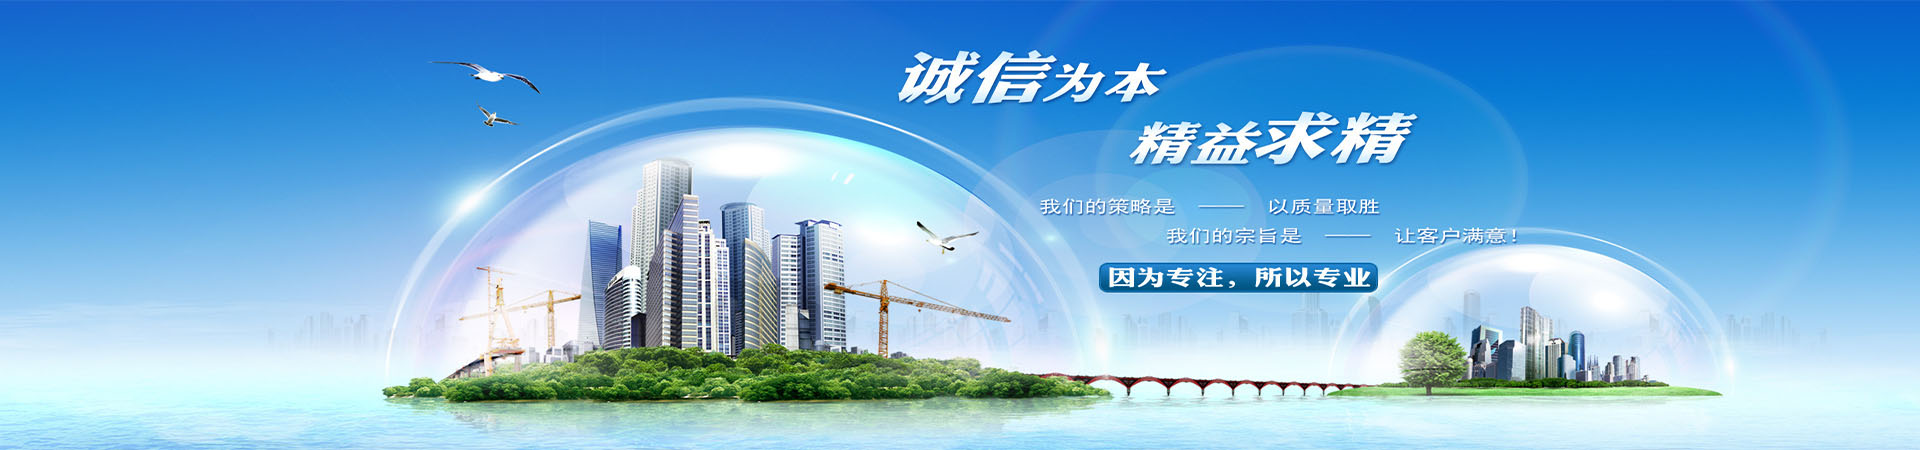 小型升降机设备、重庆本地小型升降机设备、重庆、重庆小型升降机设备